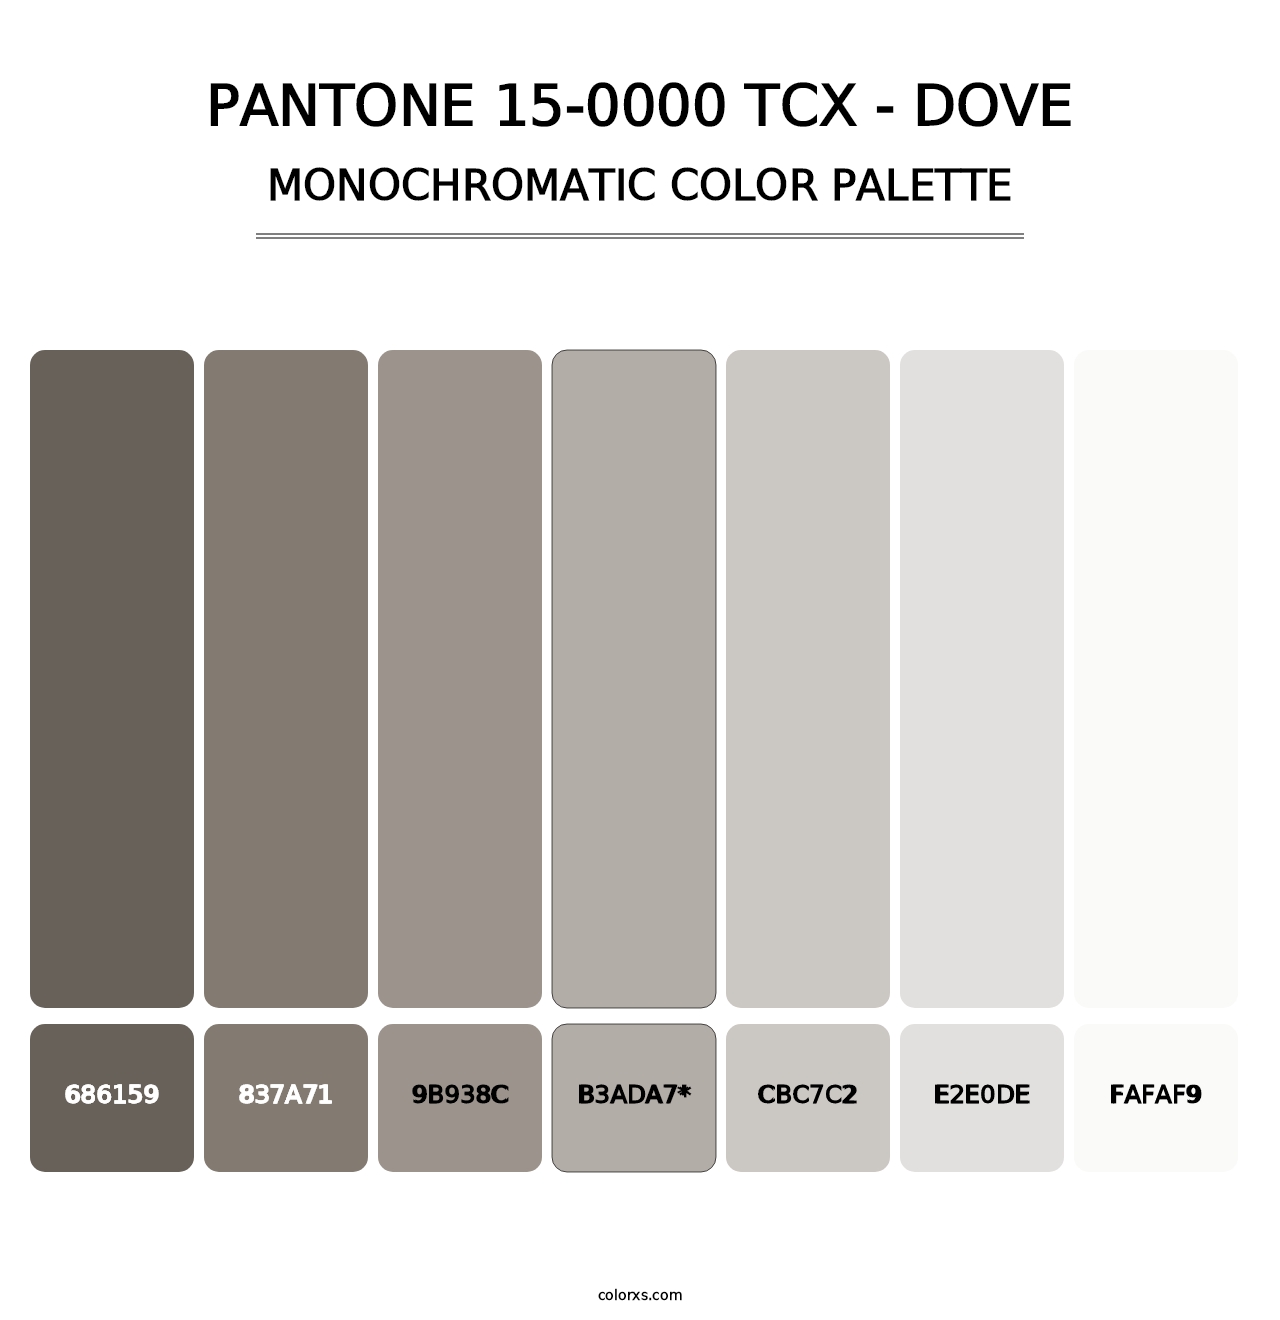 PANTONE 15-0000 TCX - Dove - Monochromatic Color Palette